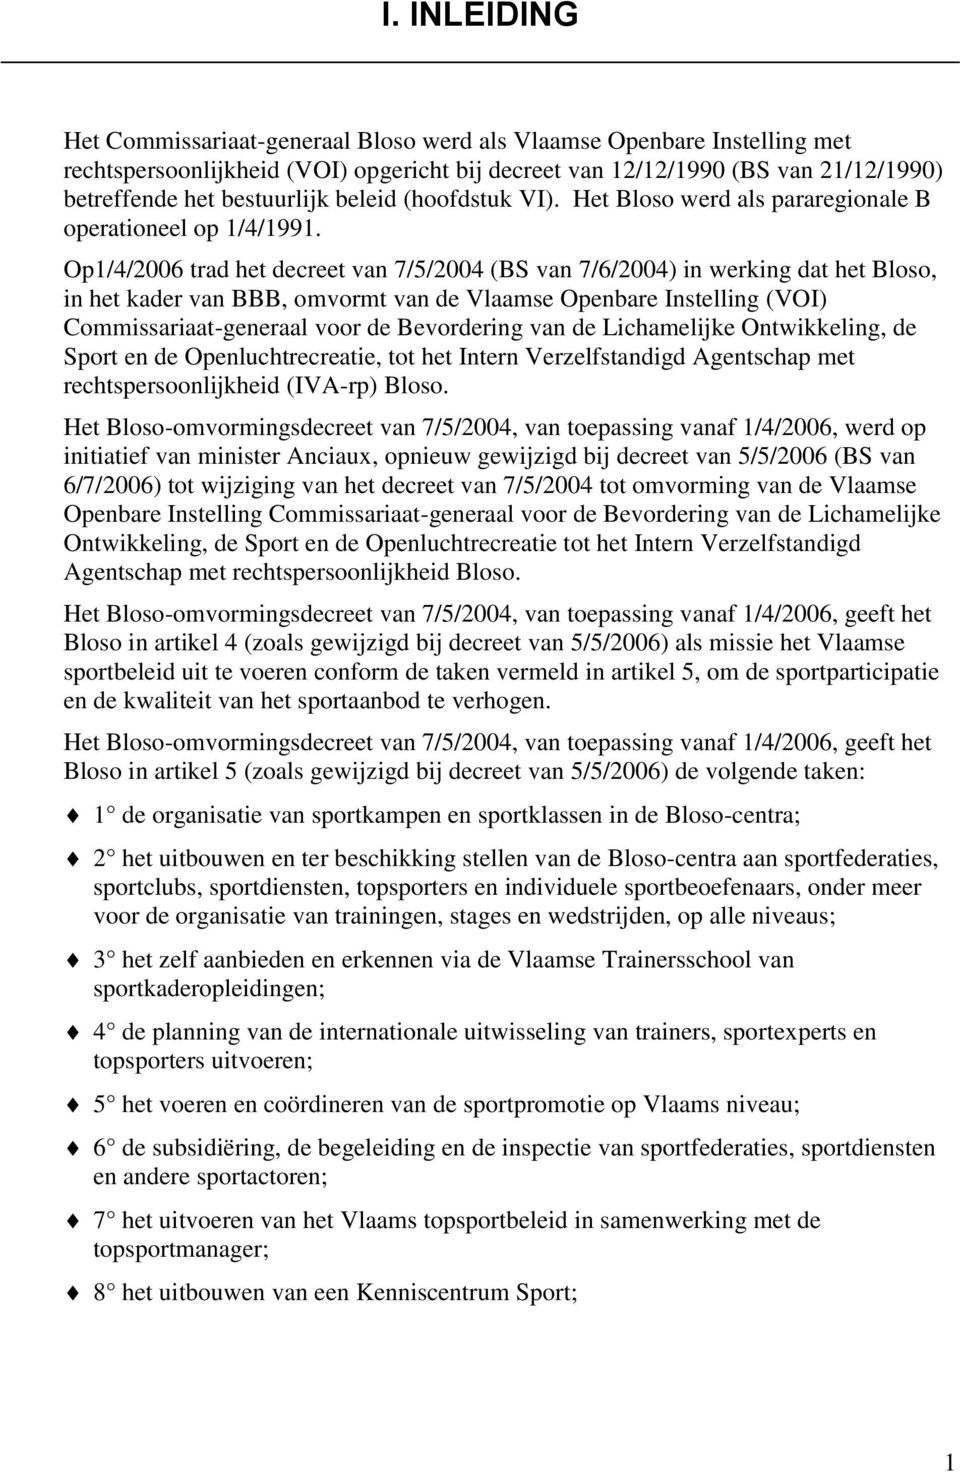 Op1/4/26 trad het decreet van 7/5/24 (BS van 7/6/24) in werking dat het Bloso, in het kader van BBB, omvormt van de Vlaamse Openbare Instelling (VOI) Commissariaat-generaal voor de Bevordering van de